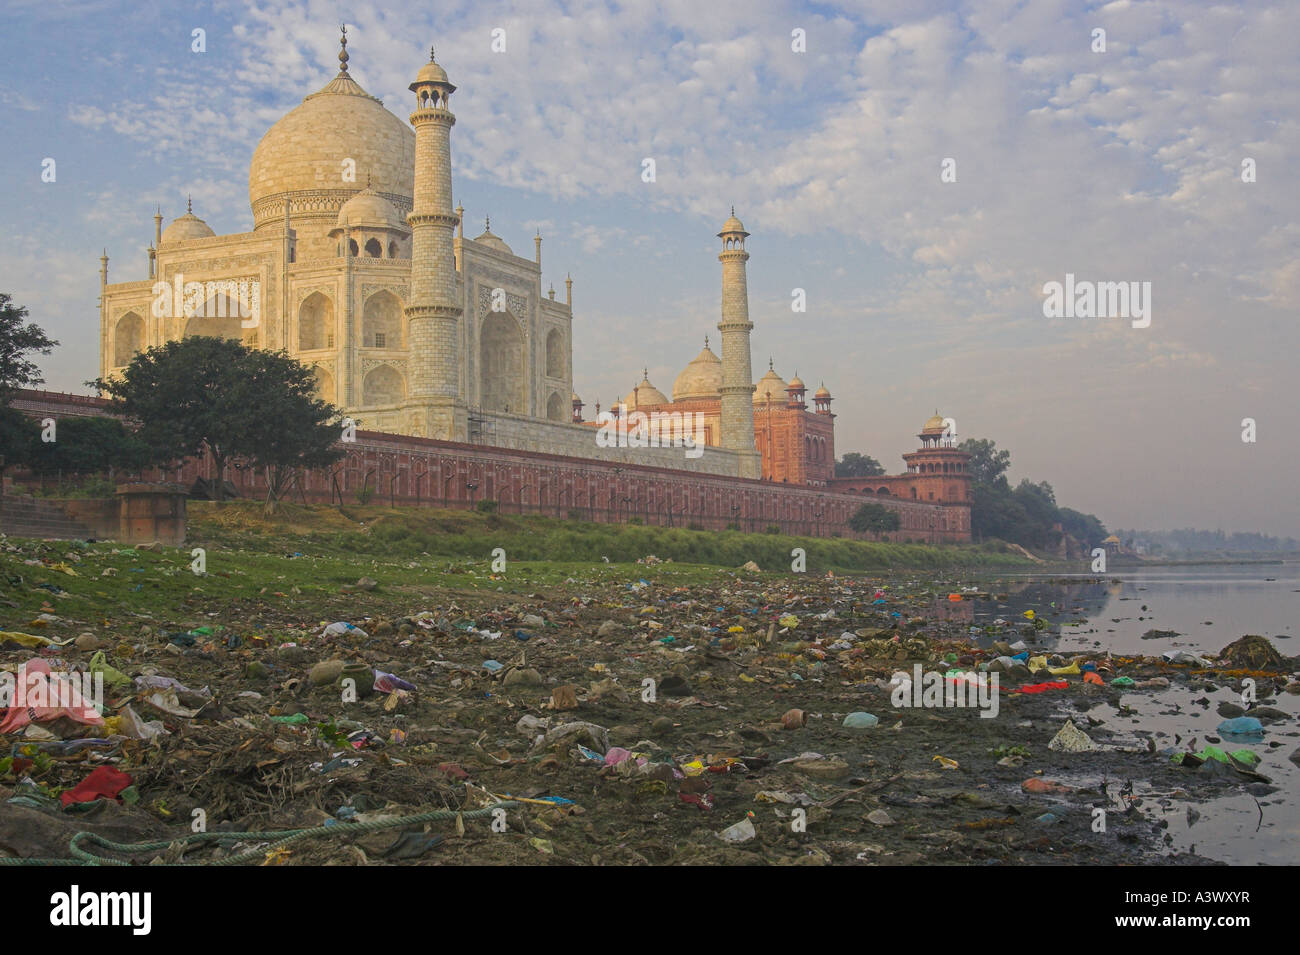 Les ordures sur la rive du fleuve à l'intérieur, derrière le Taj Mahal . - Inde Banque D'Images